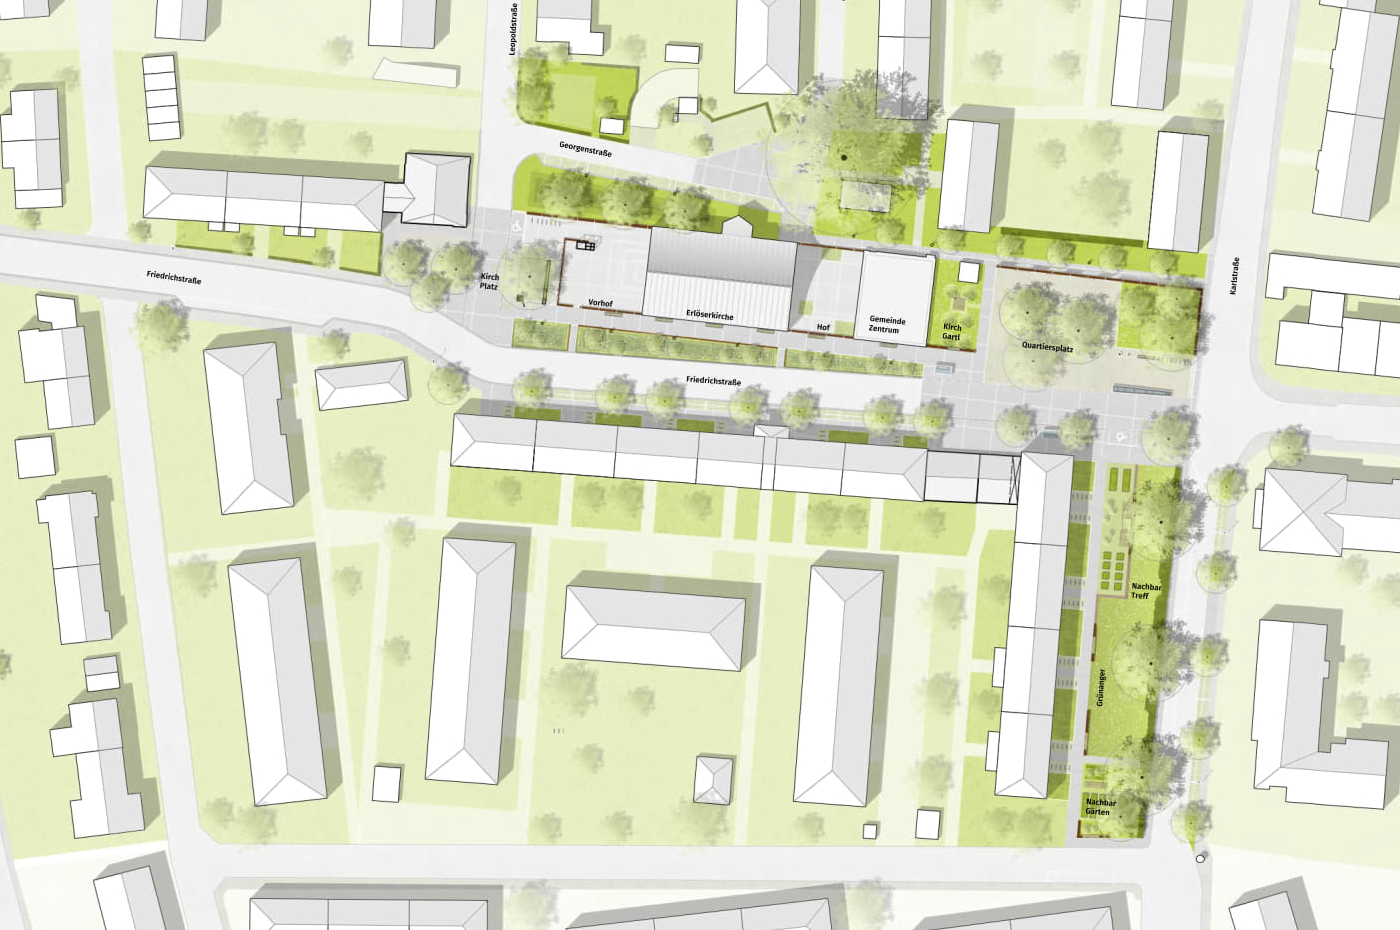 Bild: Lageplan aus dem Wettbewerb Neue Mitte Klettham, Plan: ver.de